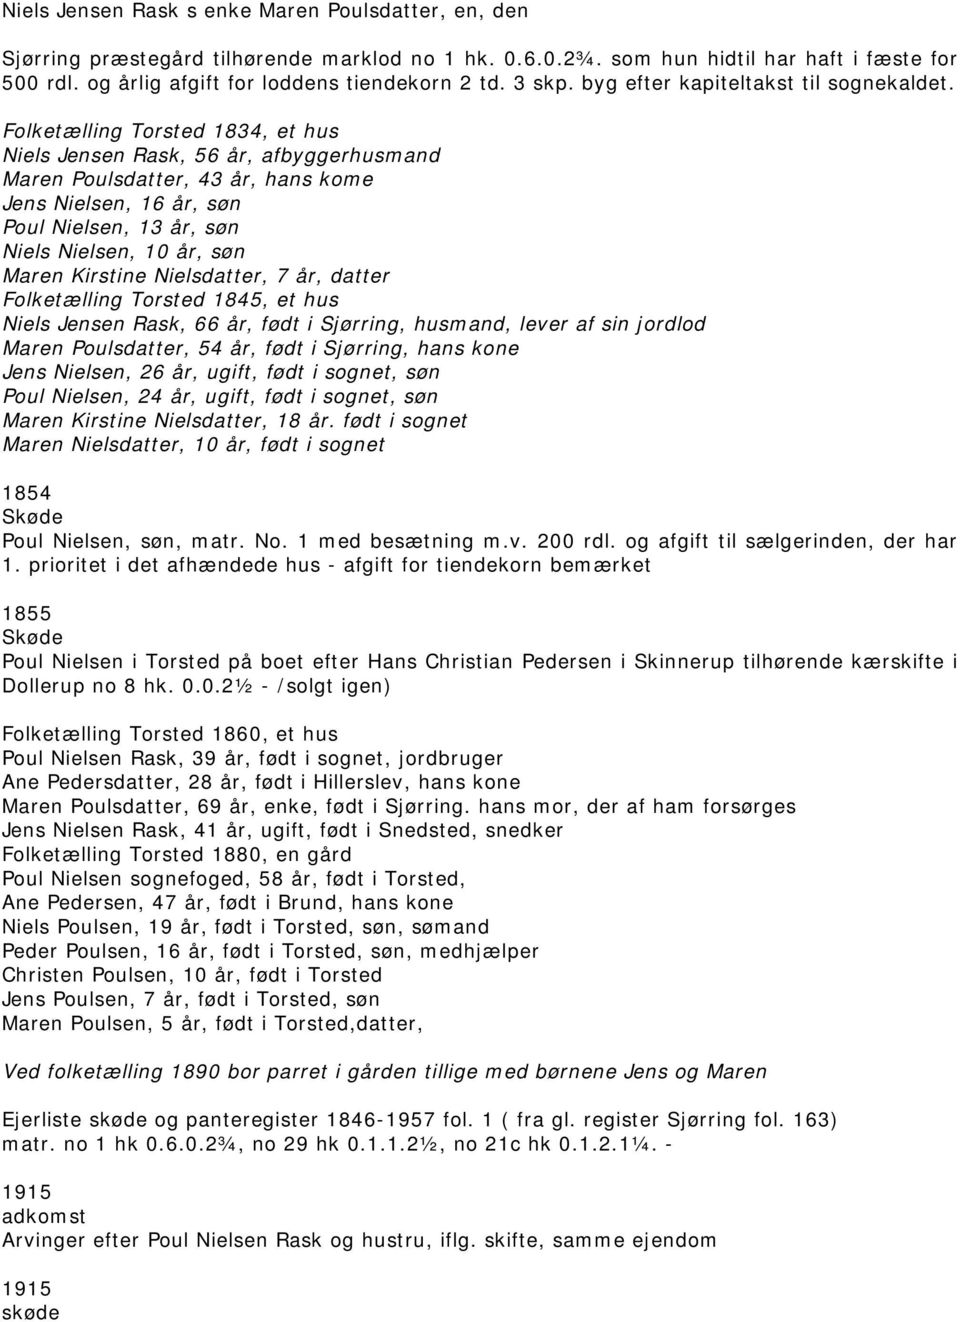 Komplet oversigt over Torsted-ejendommenes historie - PDF Gratis download